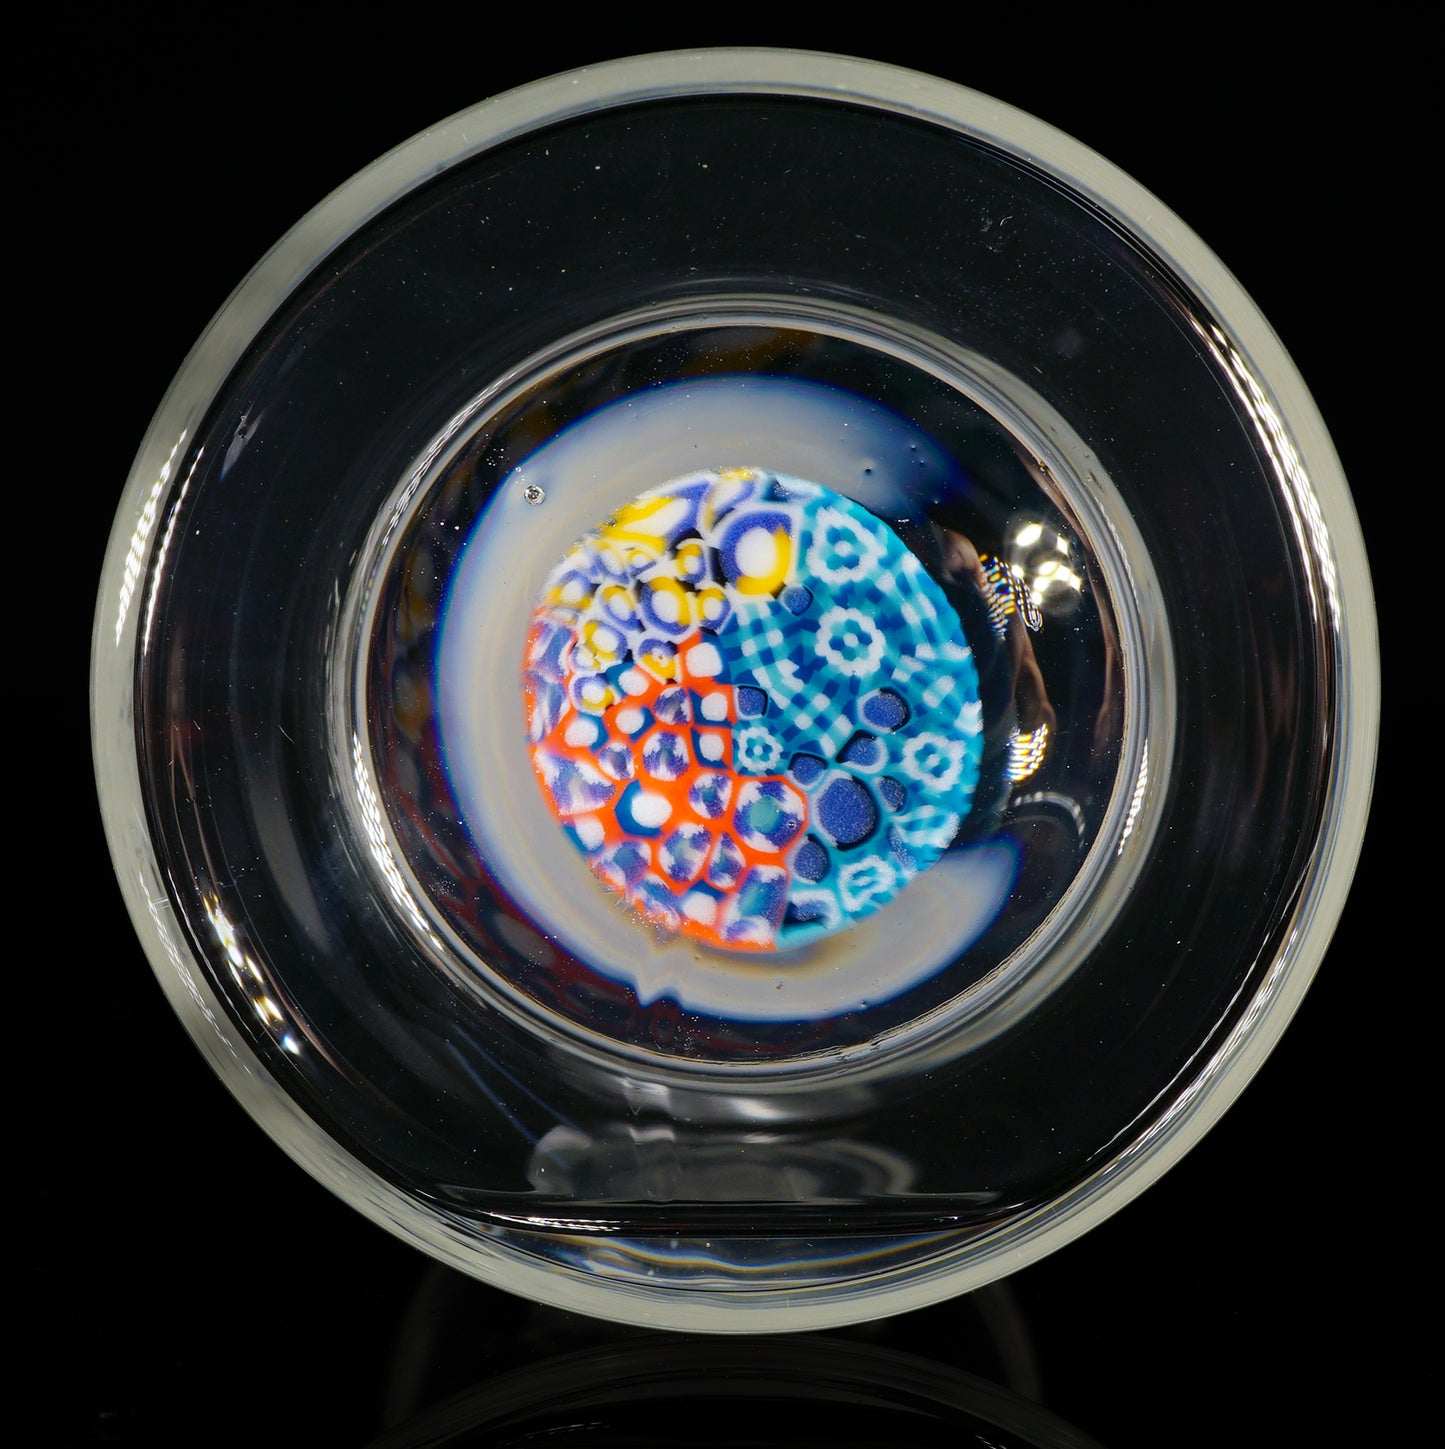 Abstract Murrini Hourglass Jar